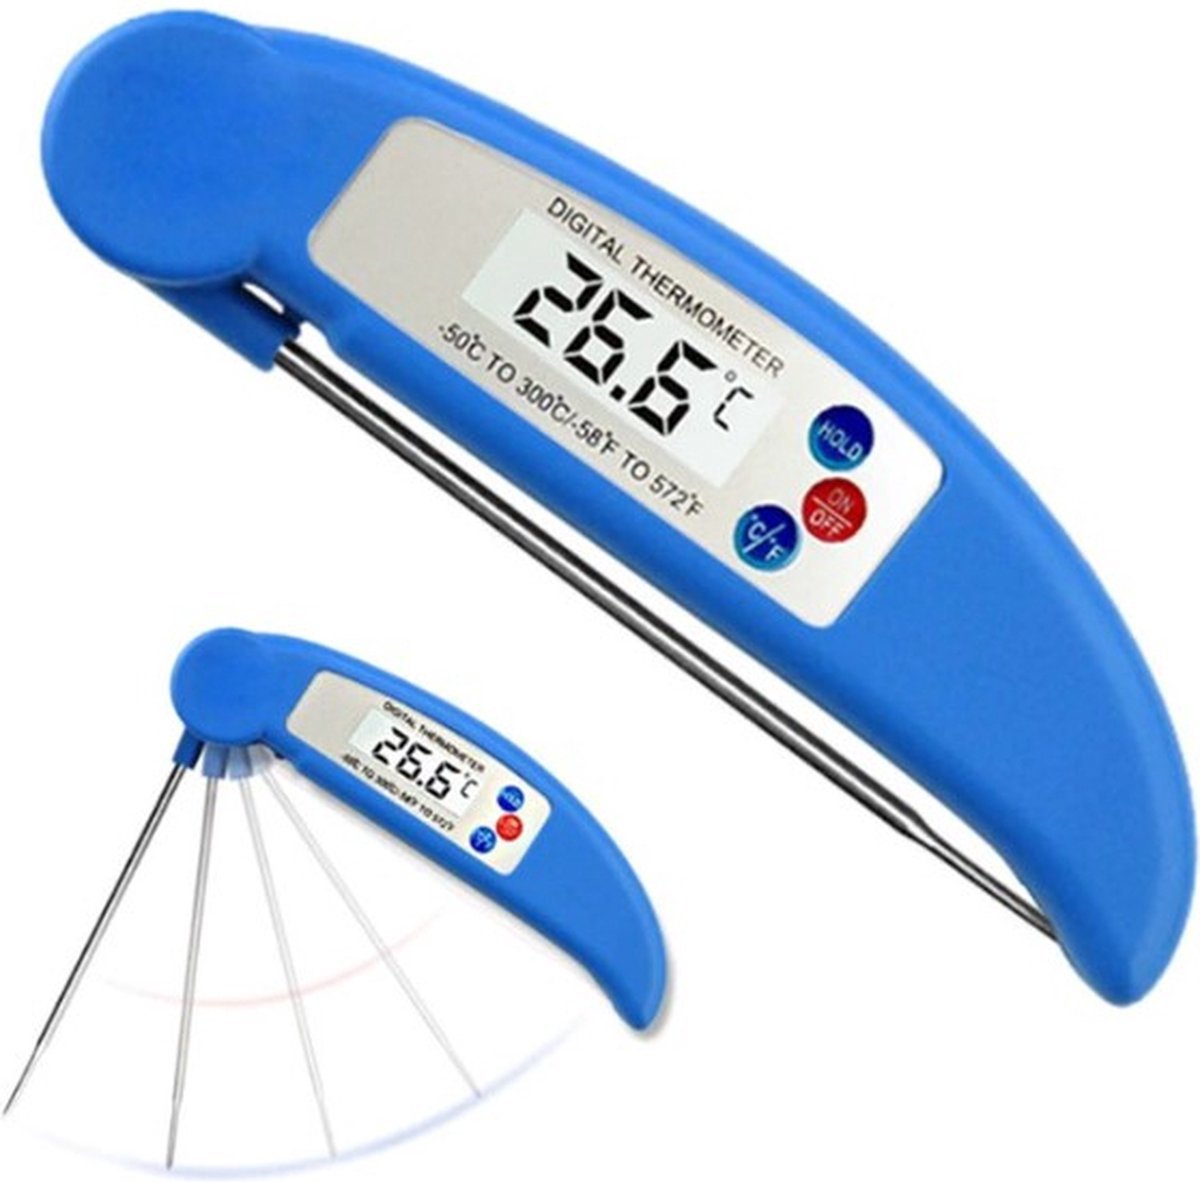 Knaak Digitale Voedingsmeter - Snel - Nauwkeurig - Betrouwbaar - Blauw - Knaak